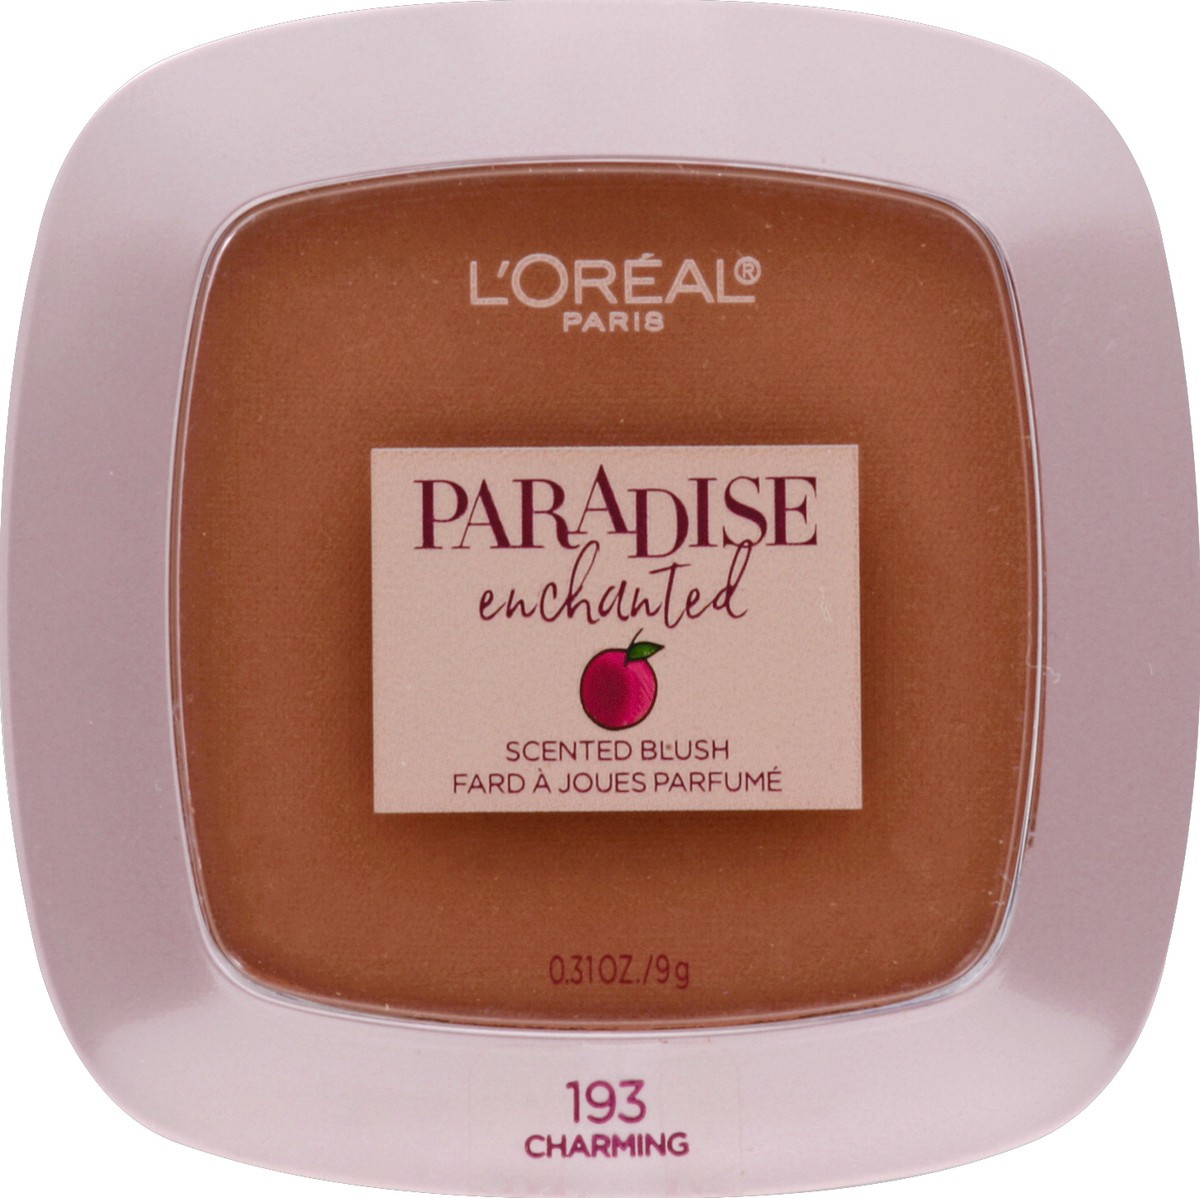 slide 5 of 6, L'Oréal L'Oreal Paris L'Or&#233;al Paris Paradise Enchanted Fruit-Scented Blush Makeup Charming, 0.31 oz